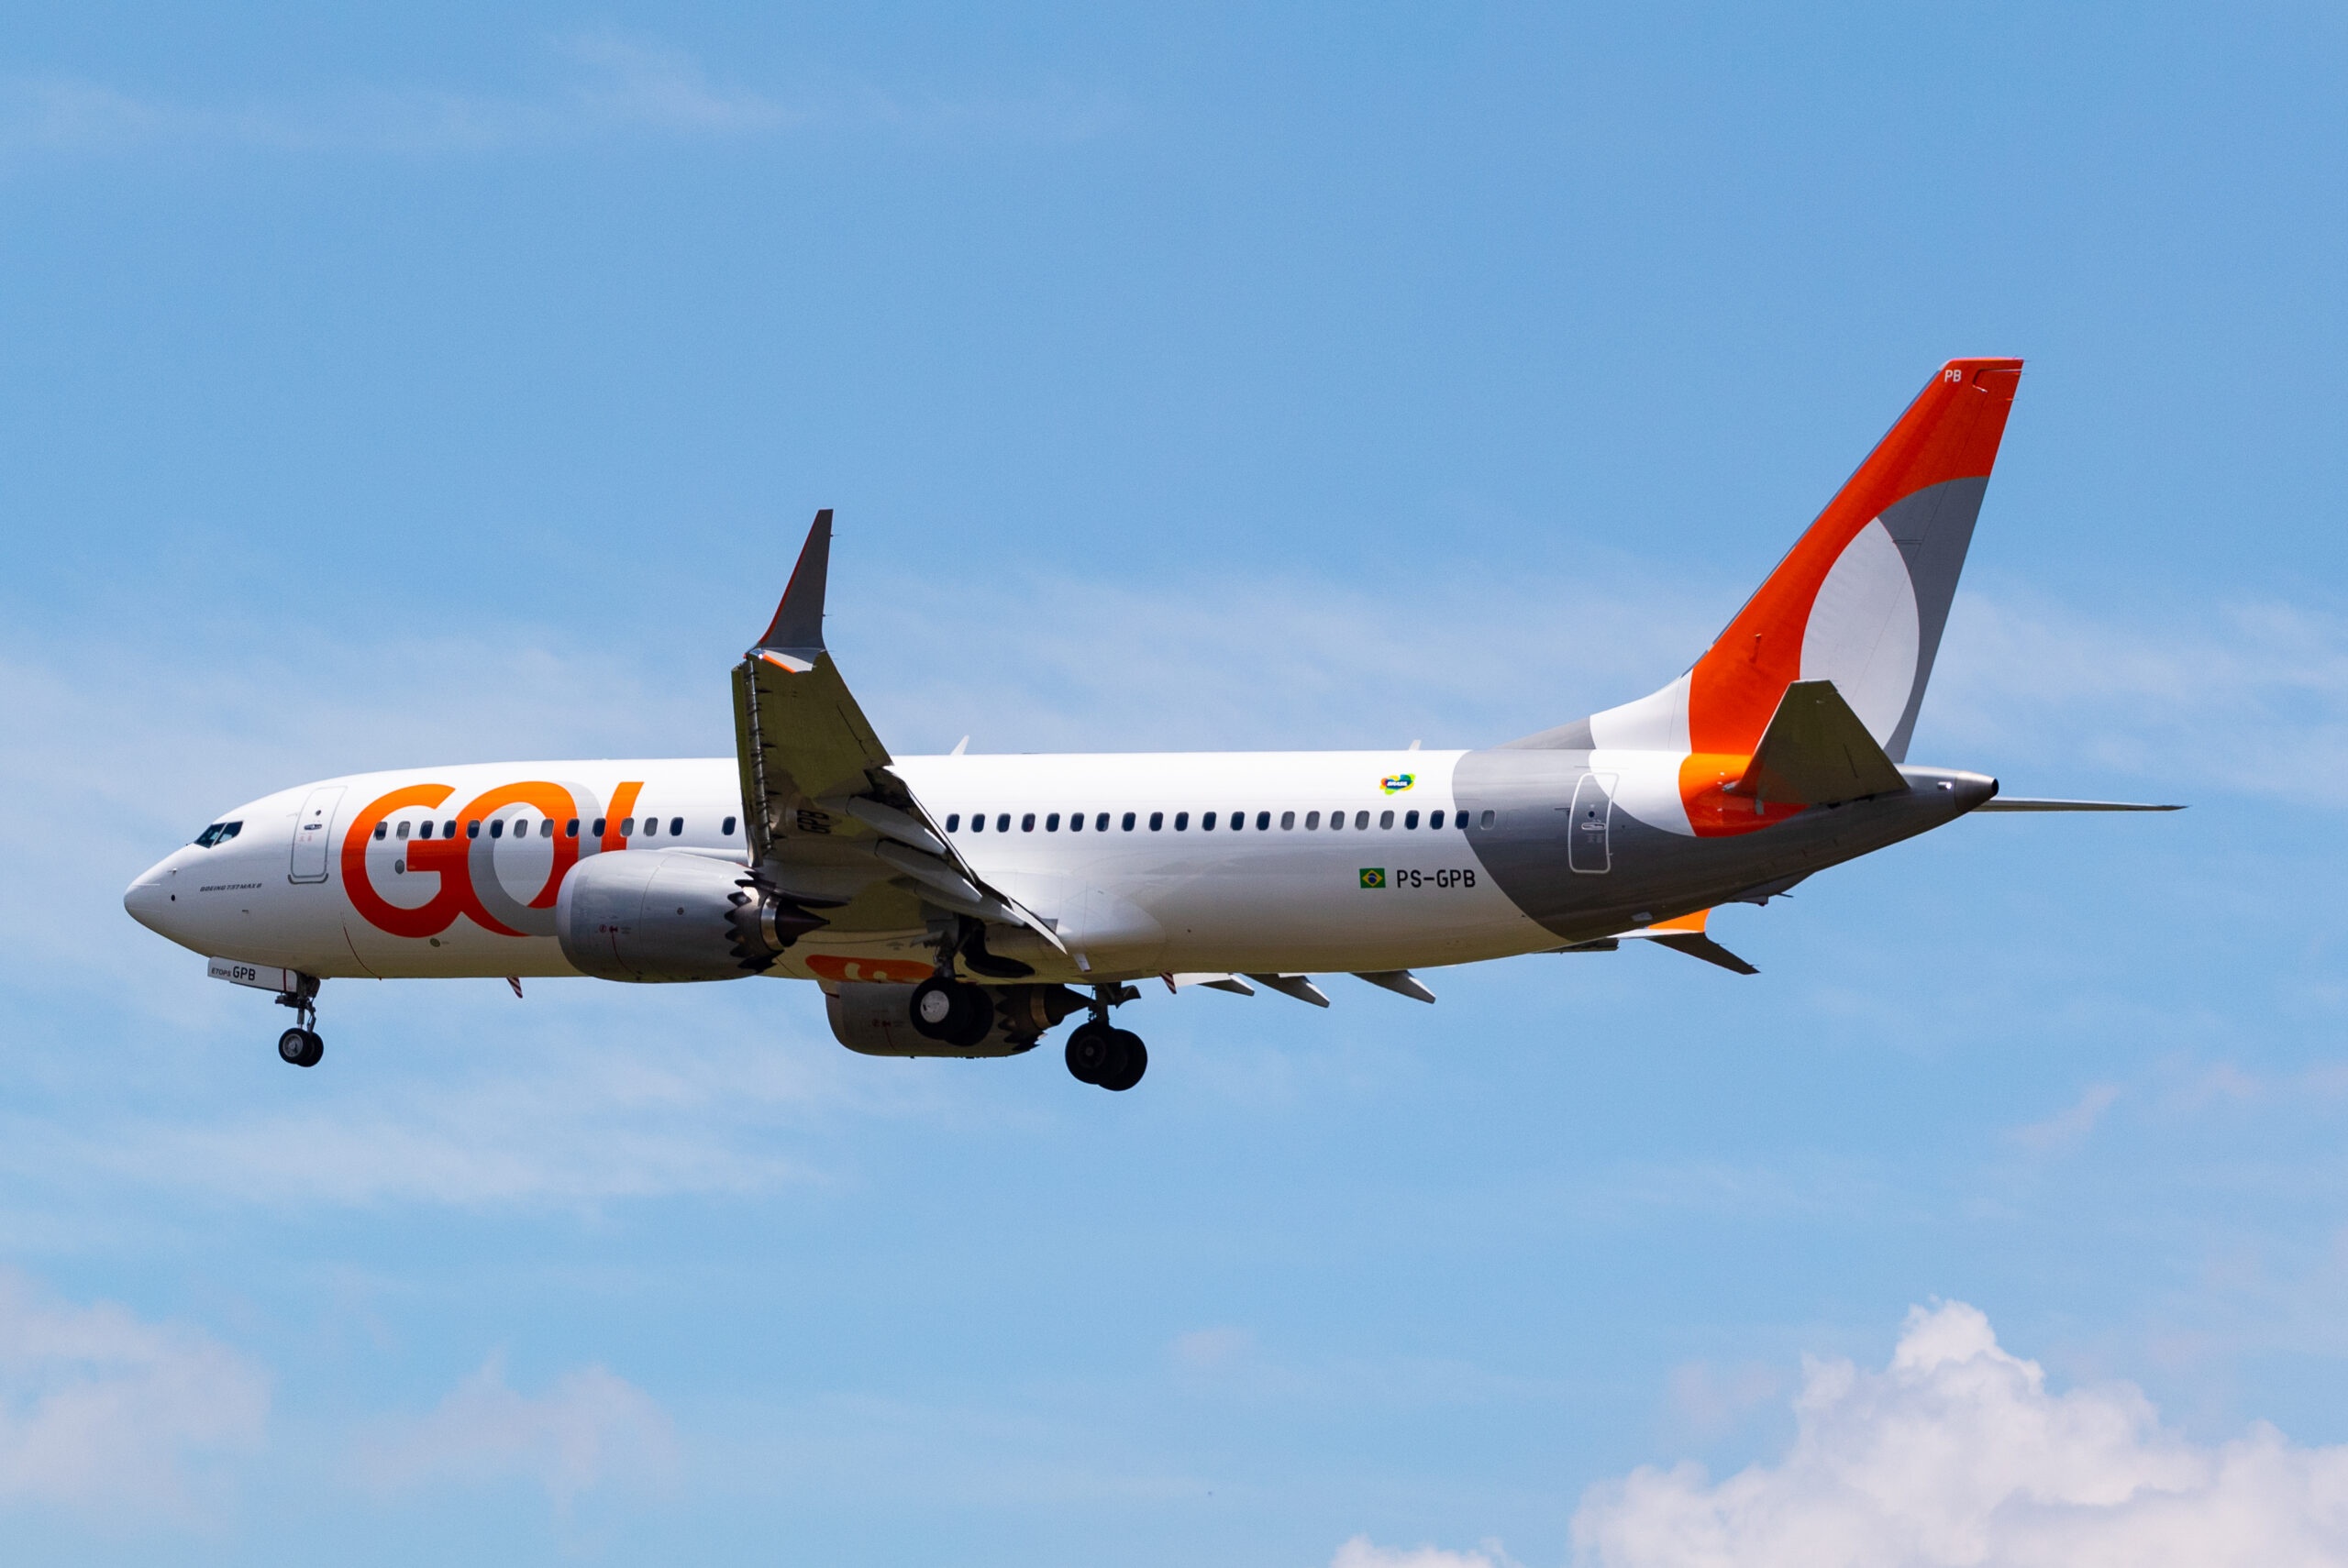 PS-GPB – Boeing 737 MAX 8 – GOL - Blog do Spotter